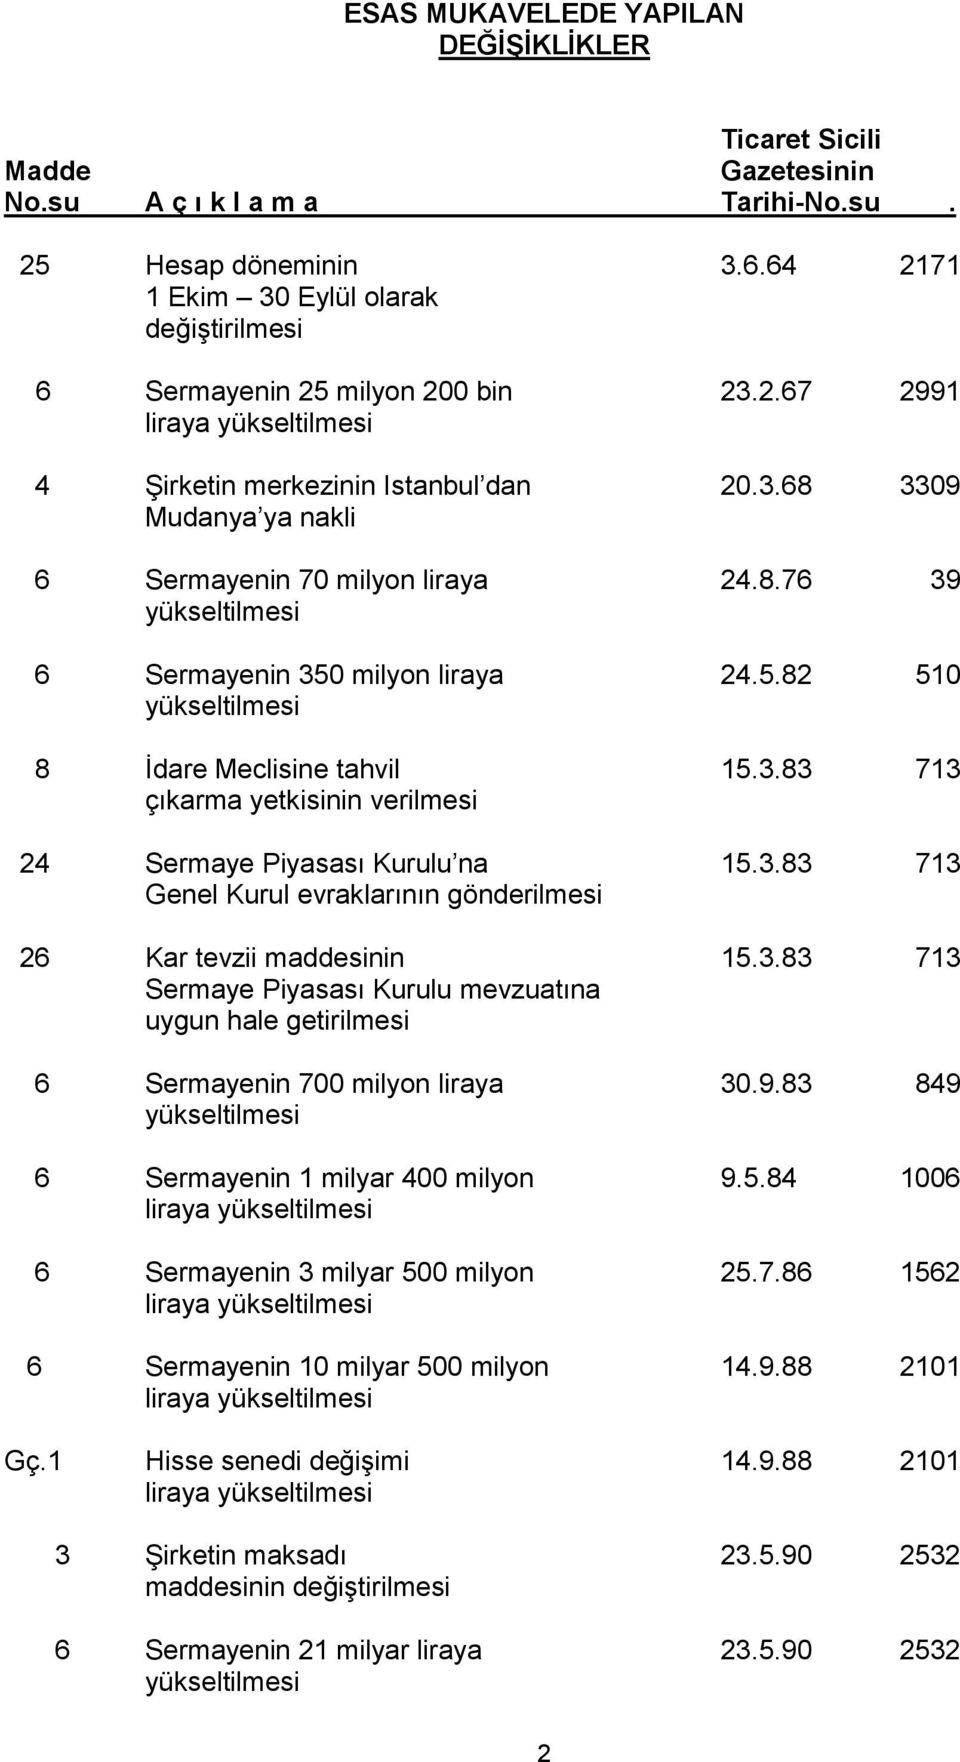 3.83 713 Genel Kurul evraklarının gönderilmesi 26 Kar tevzii maddesinin 15.3.83 713 Sermaye Piyasası Kurulu mevzuatına uygun hale getirilmesi 6 Sermayenin 700 milyon liraya 30.9.